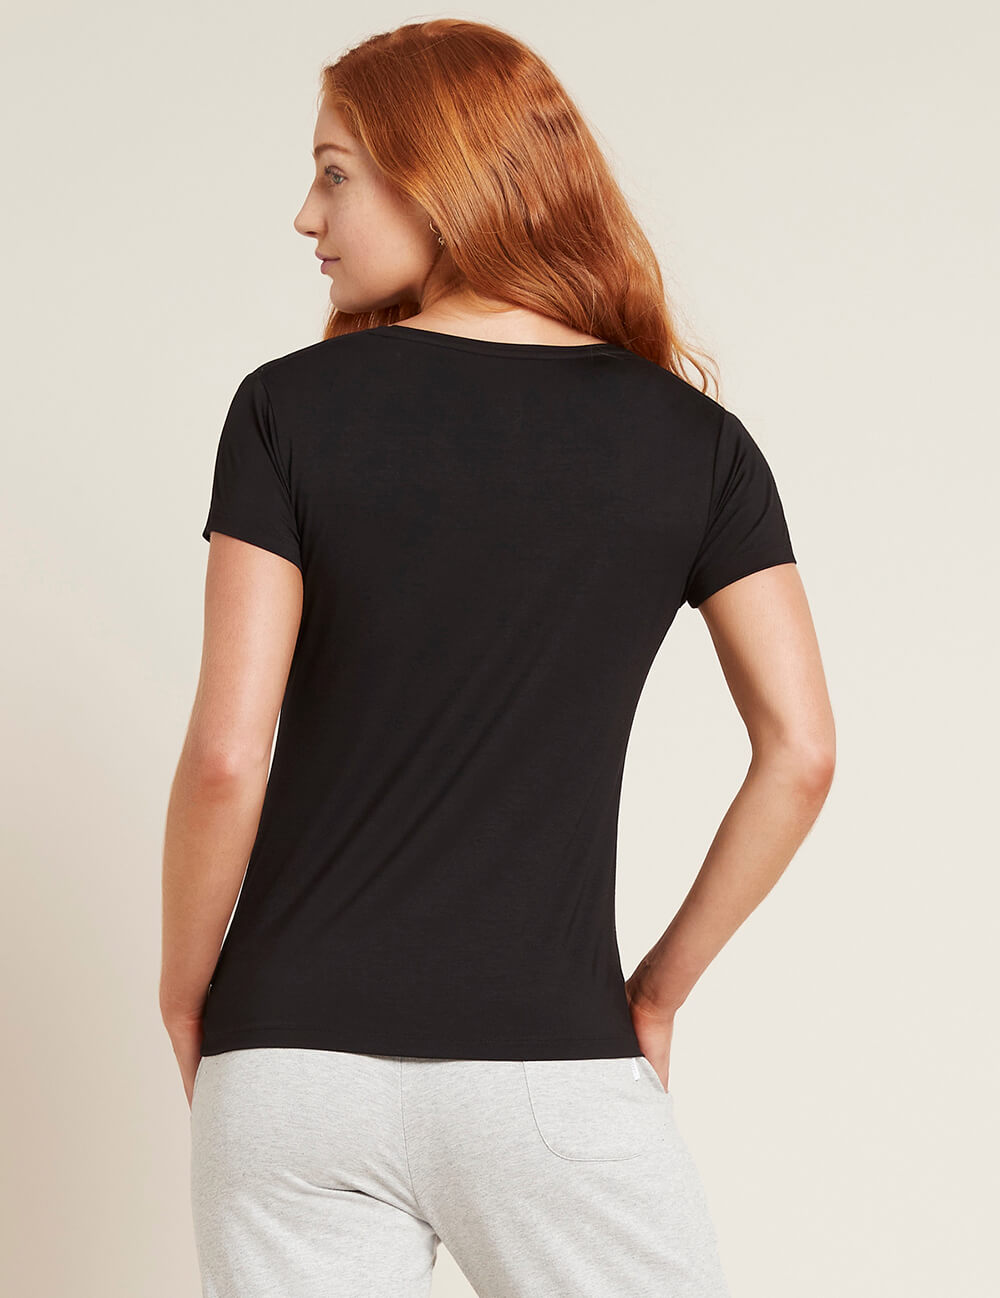 Women_s-V-Neck-T-Shirt-Black-back.jpg